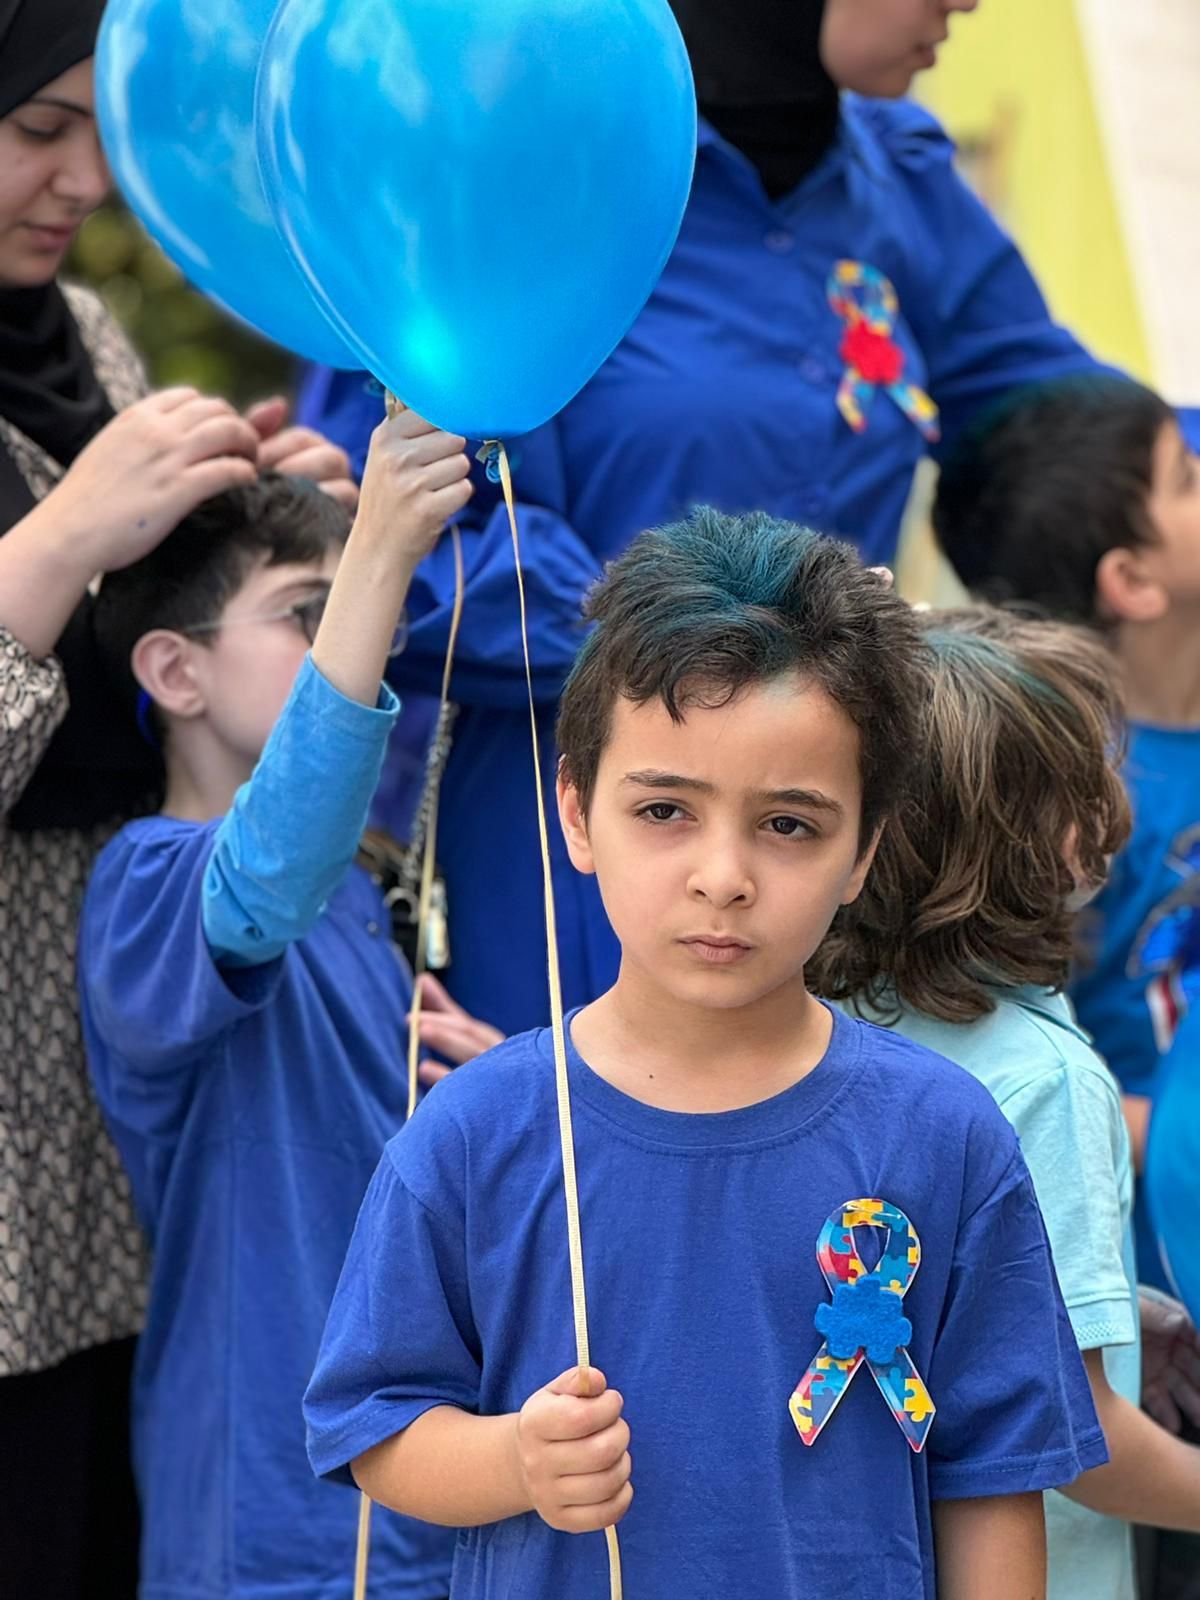 مدرسة محبّة للتّوحّد في كفر برا تزداد جمالا باللّون الأزرق في اليوم العالمي للتّوحّد.-1